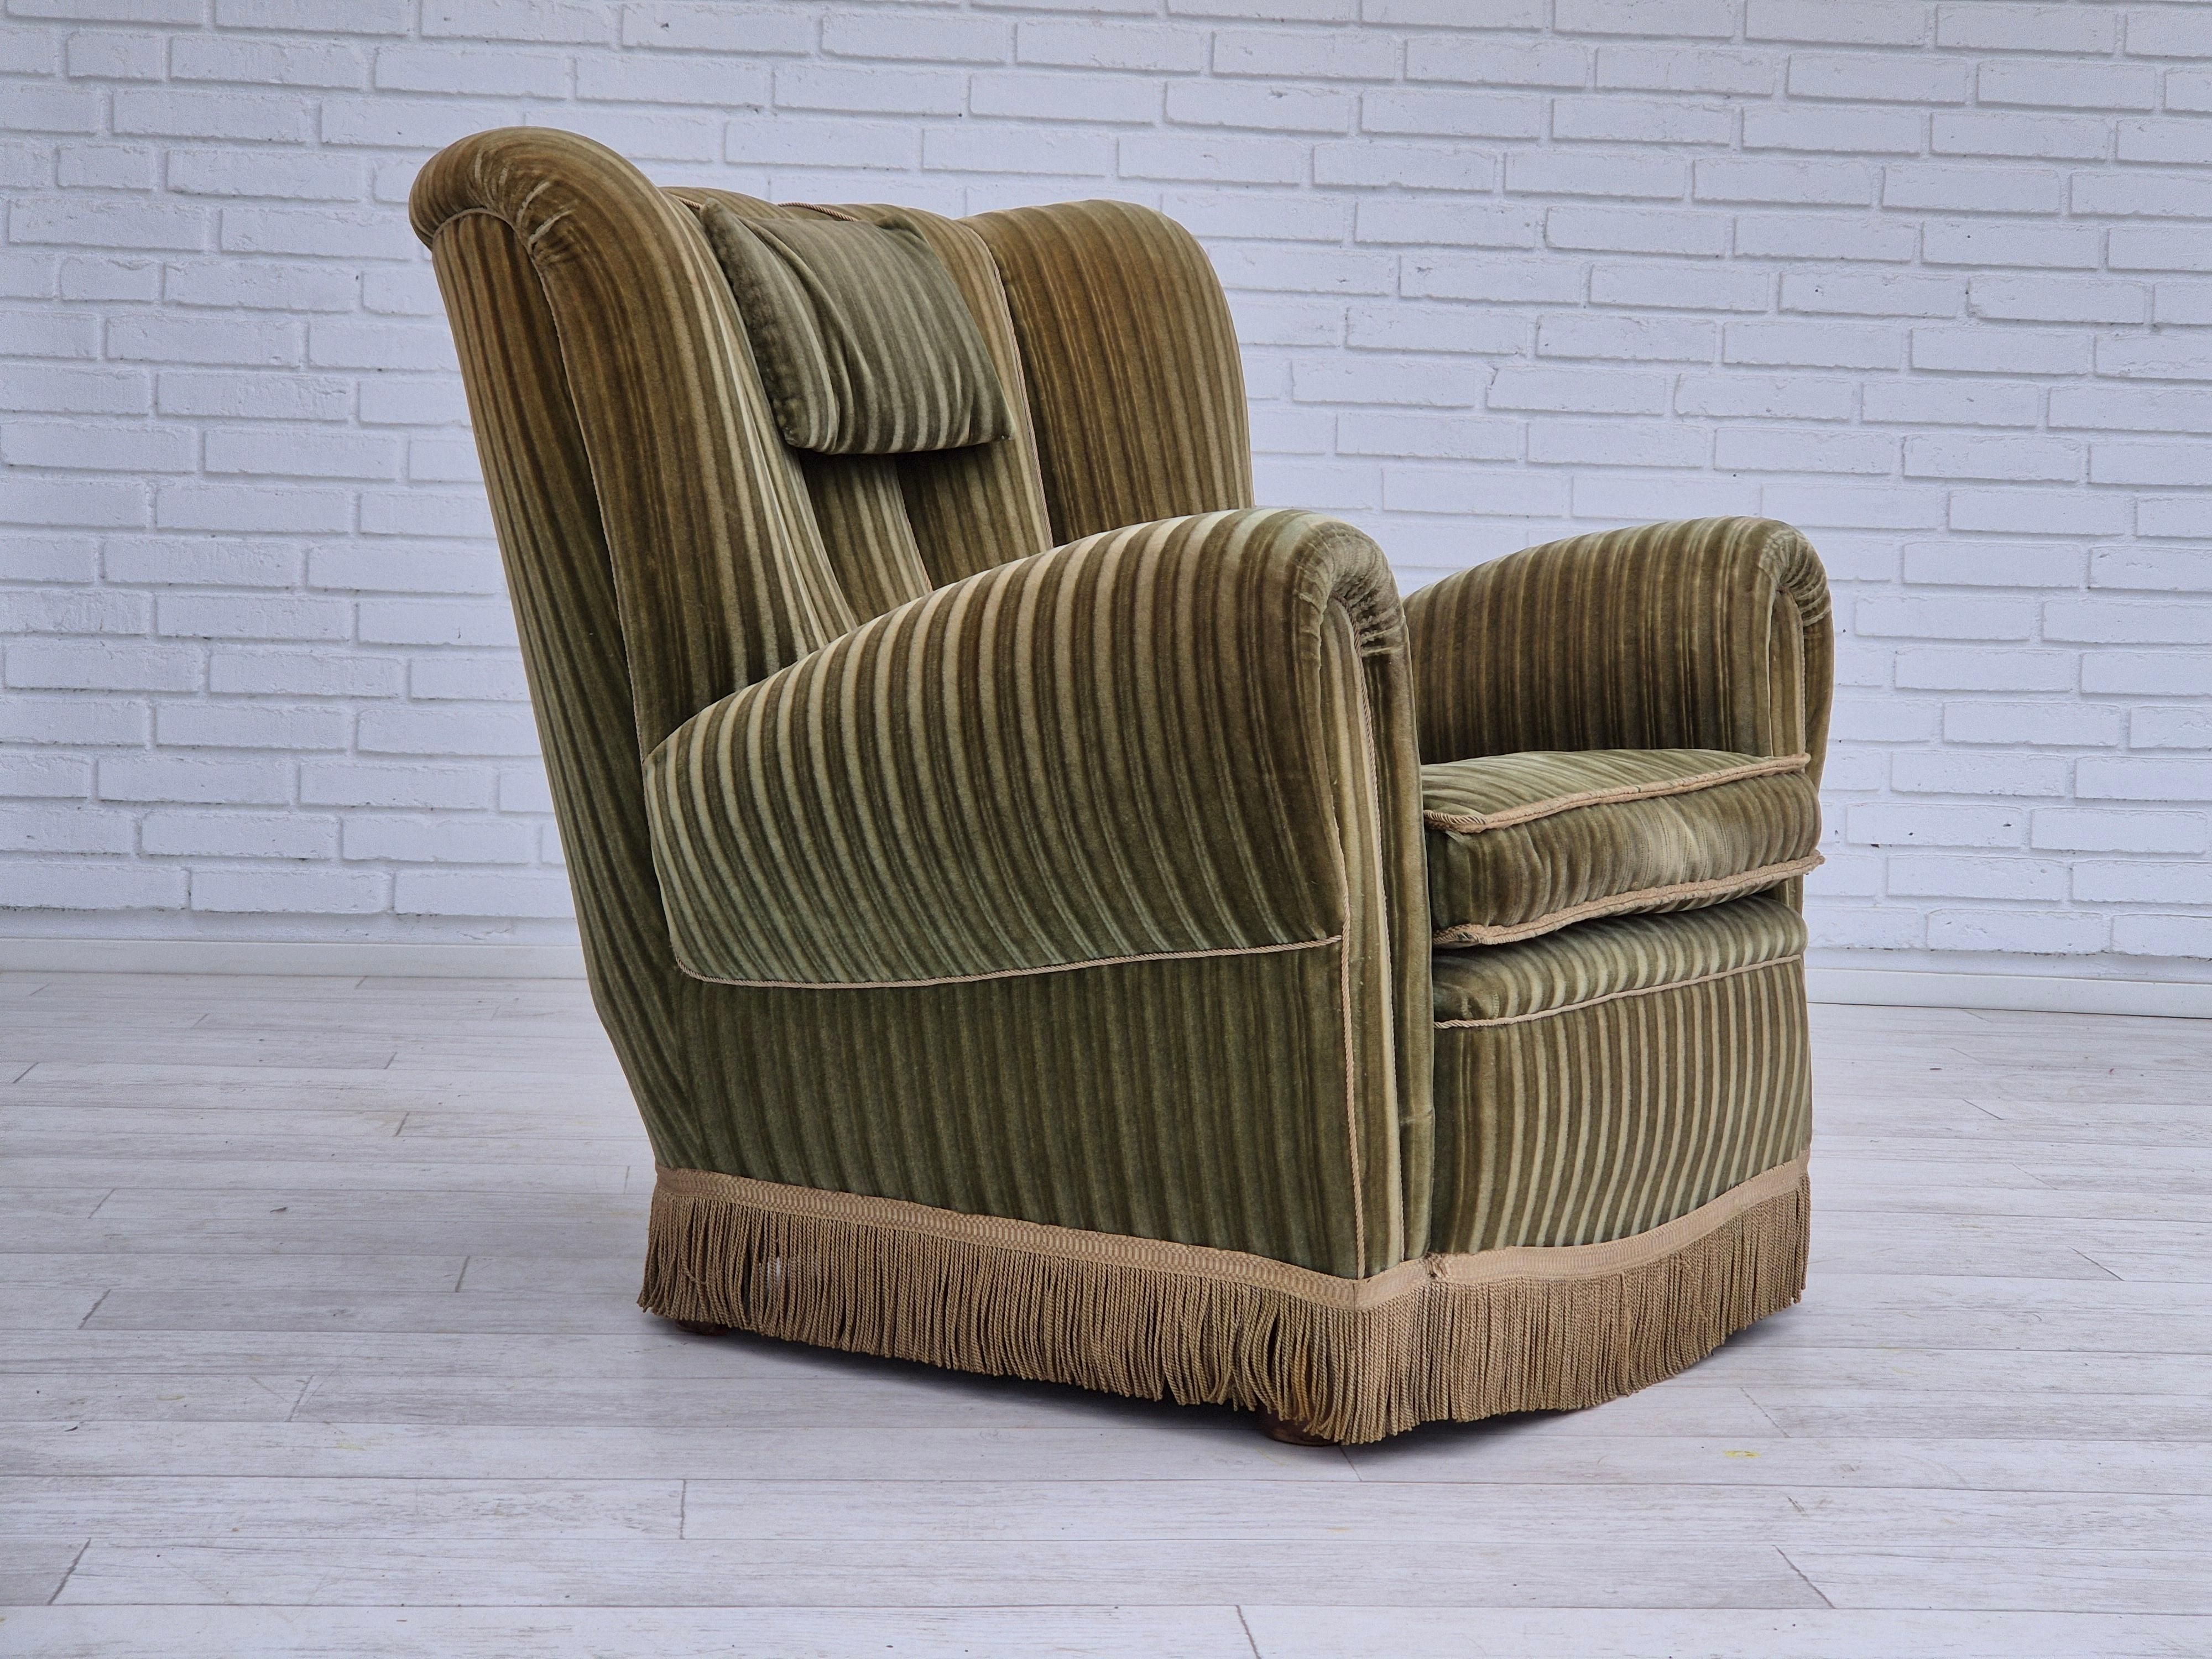 Fauteuil relax danois des années 1960 en très bon état d'origine : pas d'odeur ni de tache. Velours d'ameublement vert d'origine. Ressorts dans l'assise, pieds en bois de hêtre. Fabriqué par un fabricant de meubles danois dans les années 1960-65.